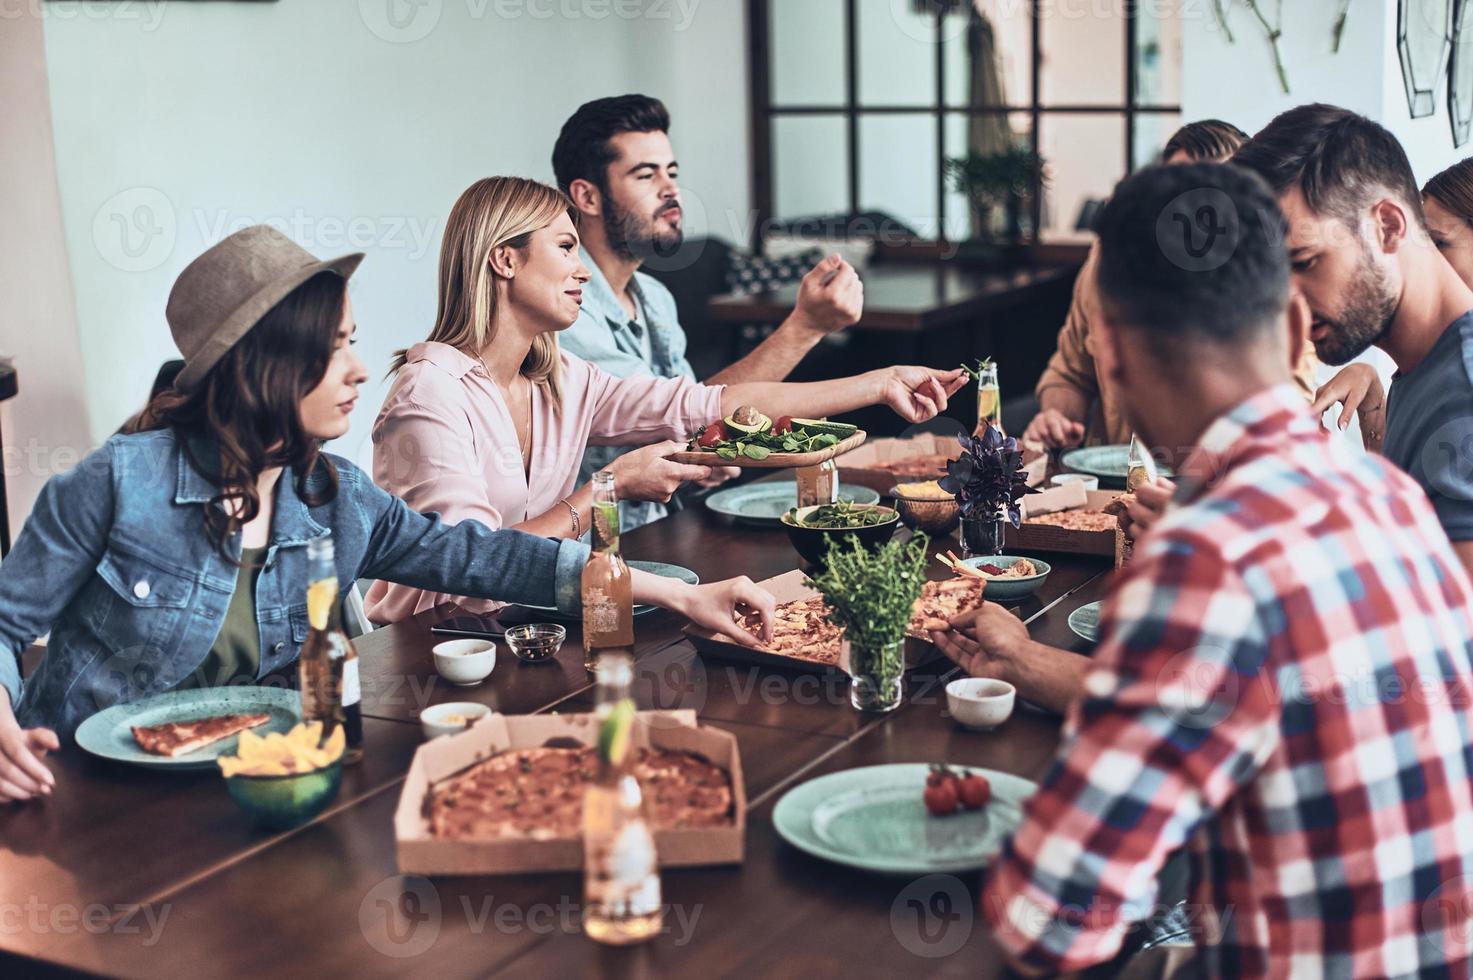 La vida es mejor con amigos. grupo de jóvenes con ropa informal comiendo y sonriendo mientras cenan en el interior foto